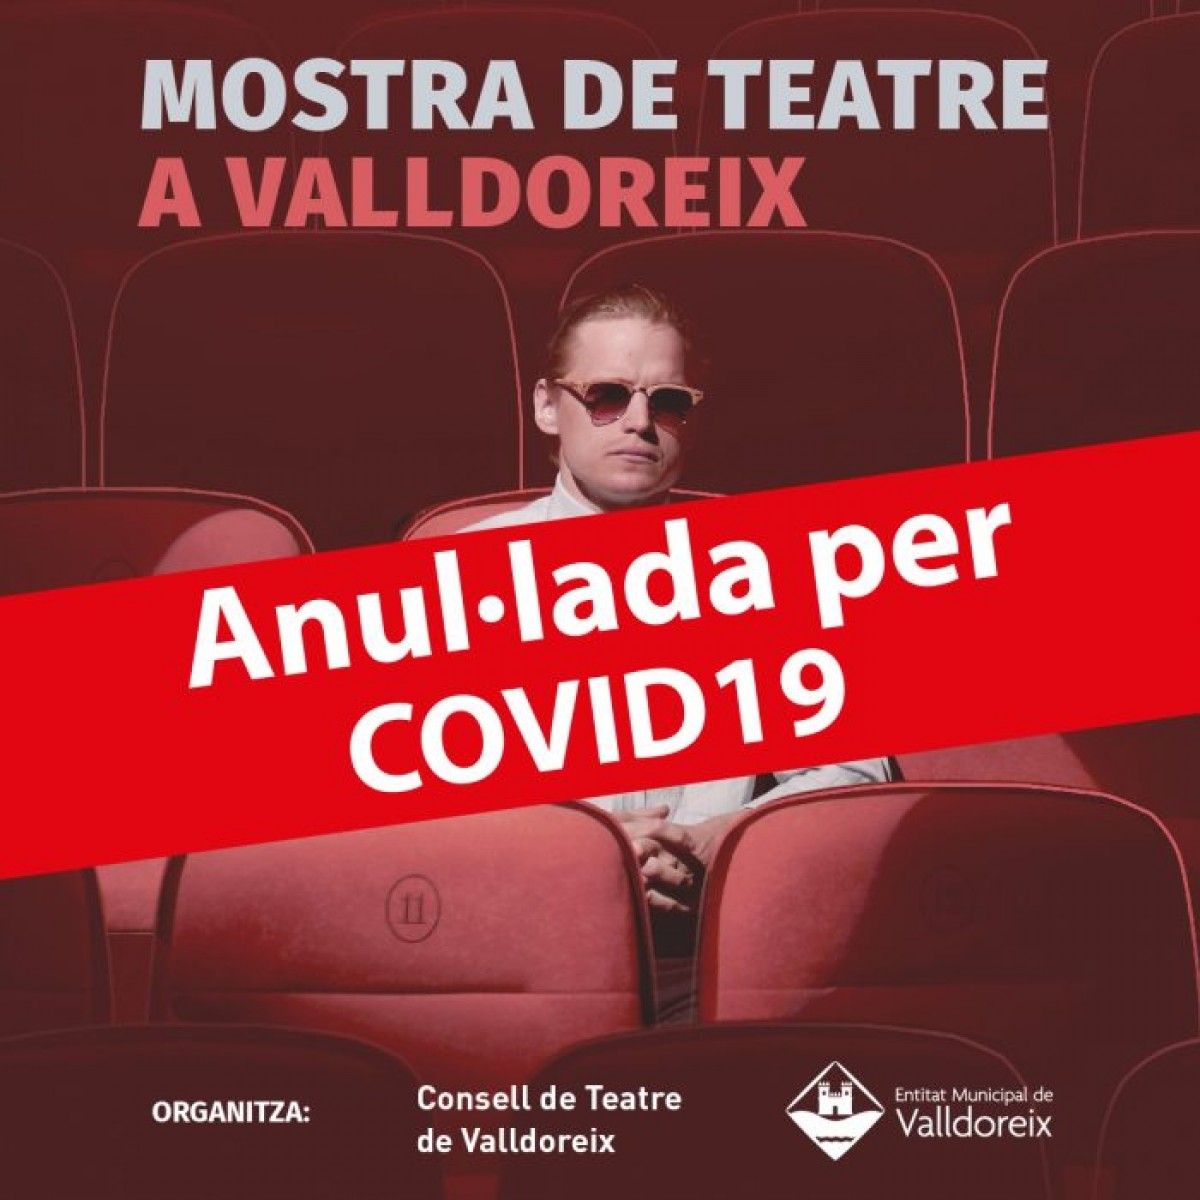 La Mostra de Teatre 2020, anul·lada